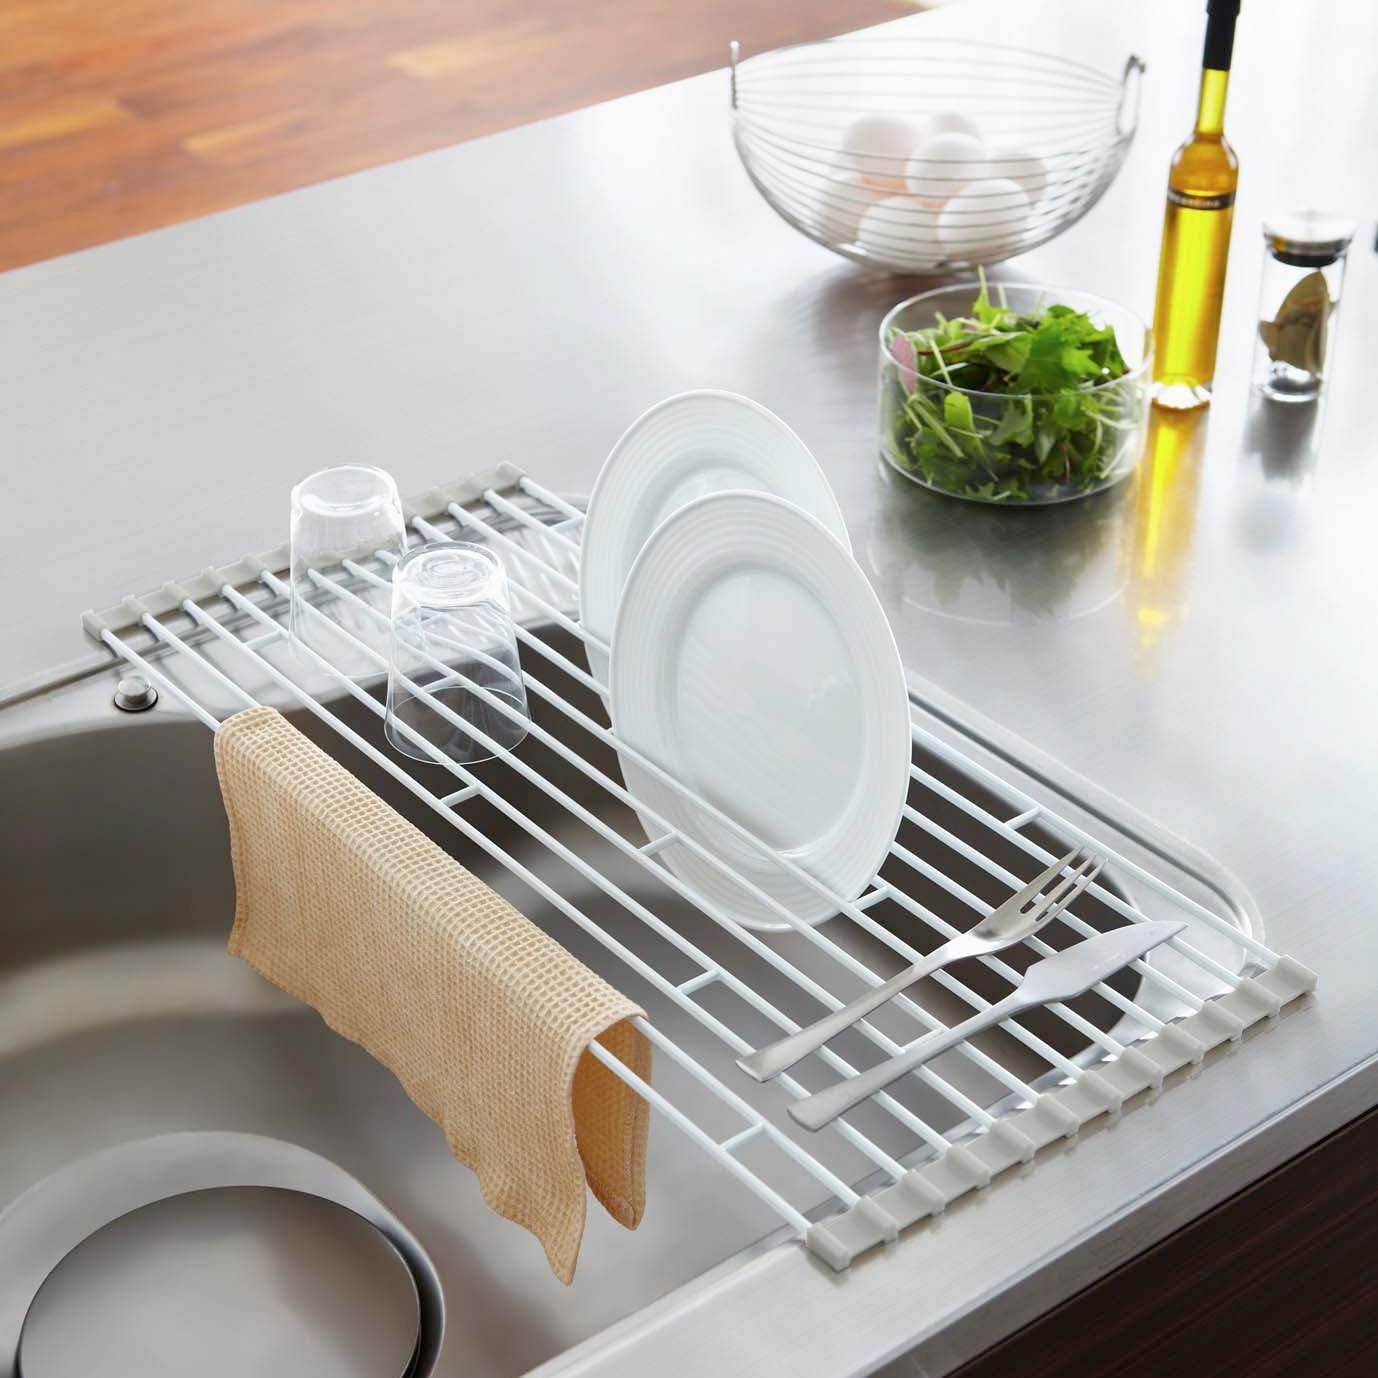 Кухонная решетка для посуды. Dish Rack сушилка для посуды. Сушилка на раковину. Решетка в раковину на кухню. Сетка для сушки посуды.